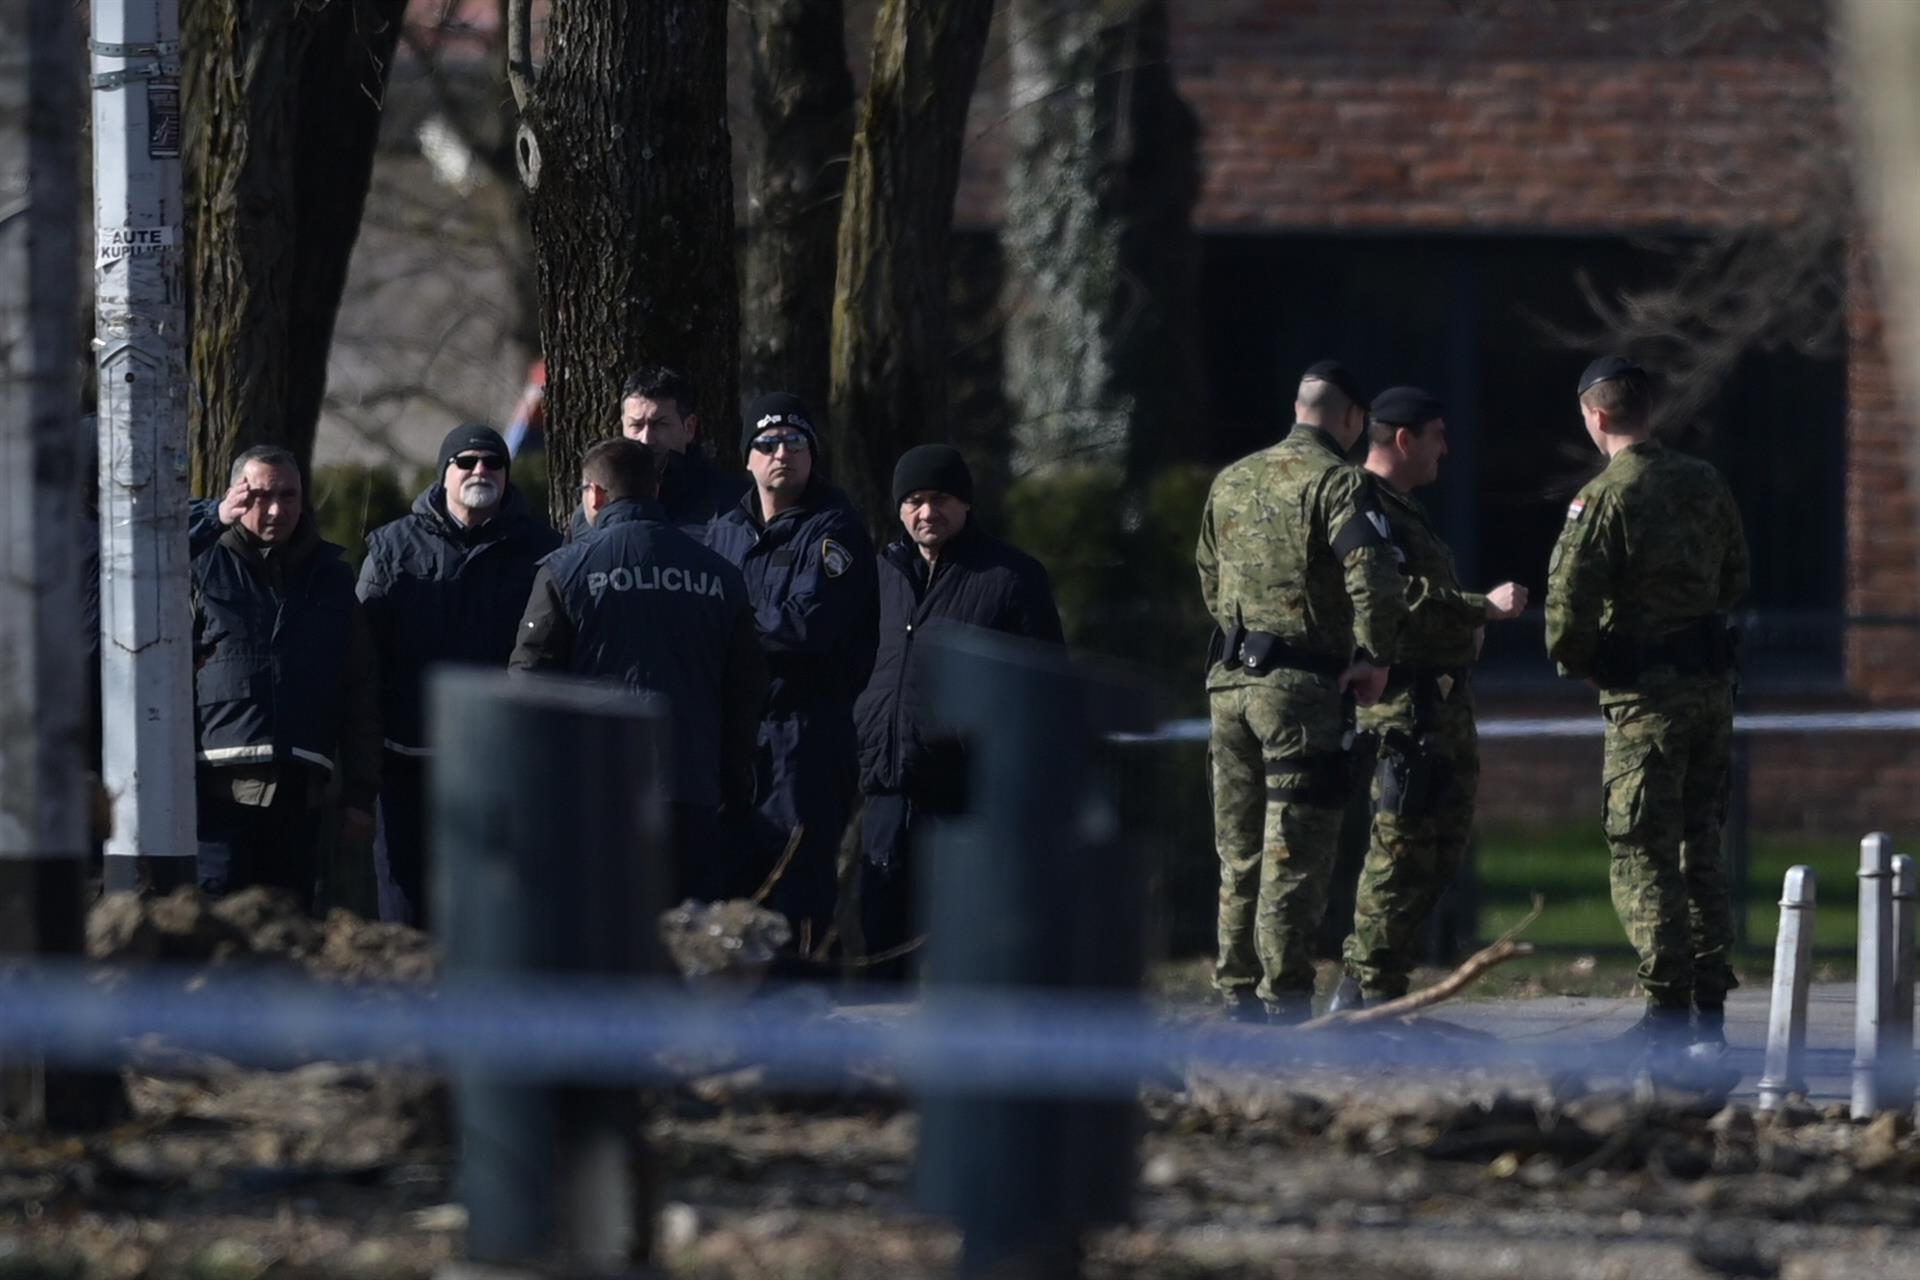 El dron siniestrado el jueves en Zagreb portaba explosivos